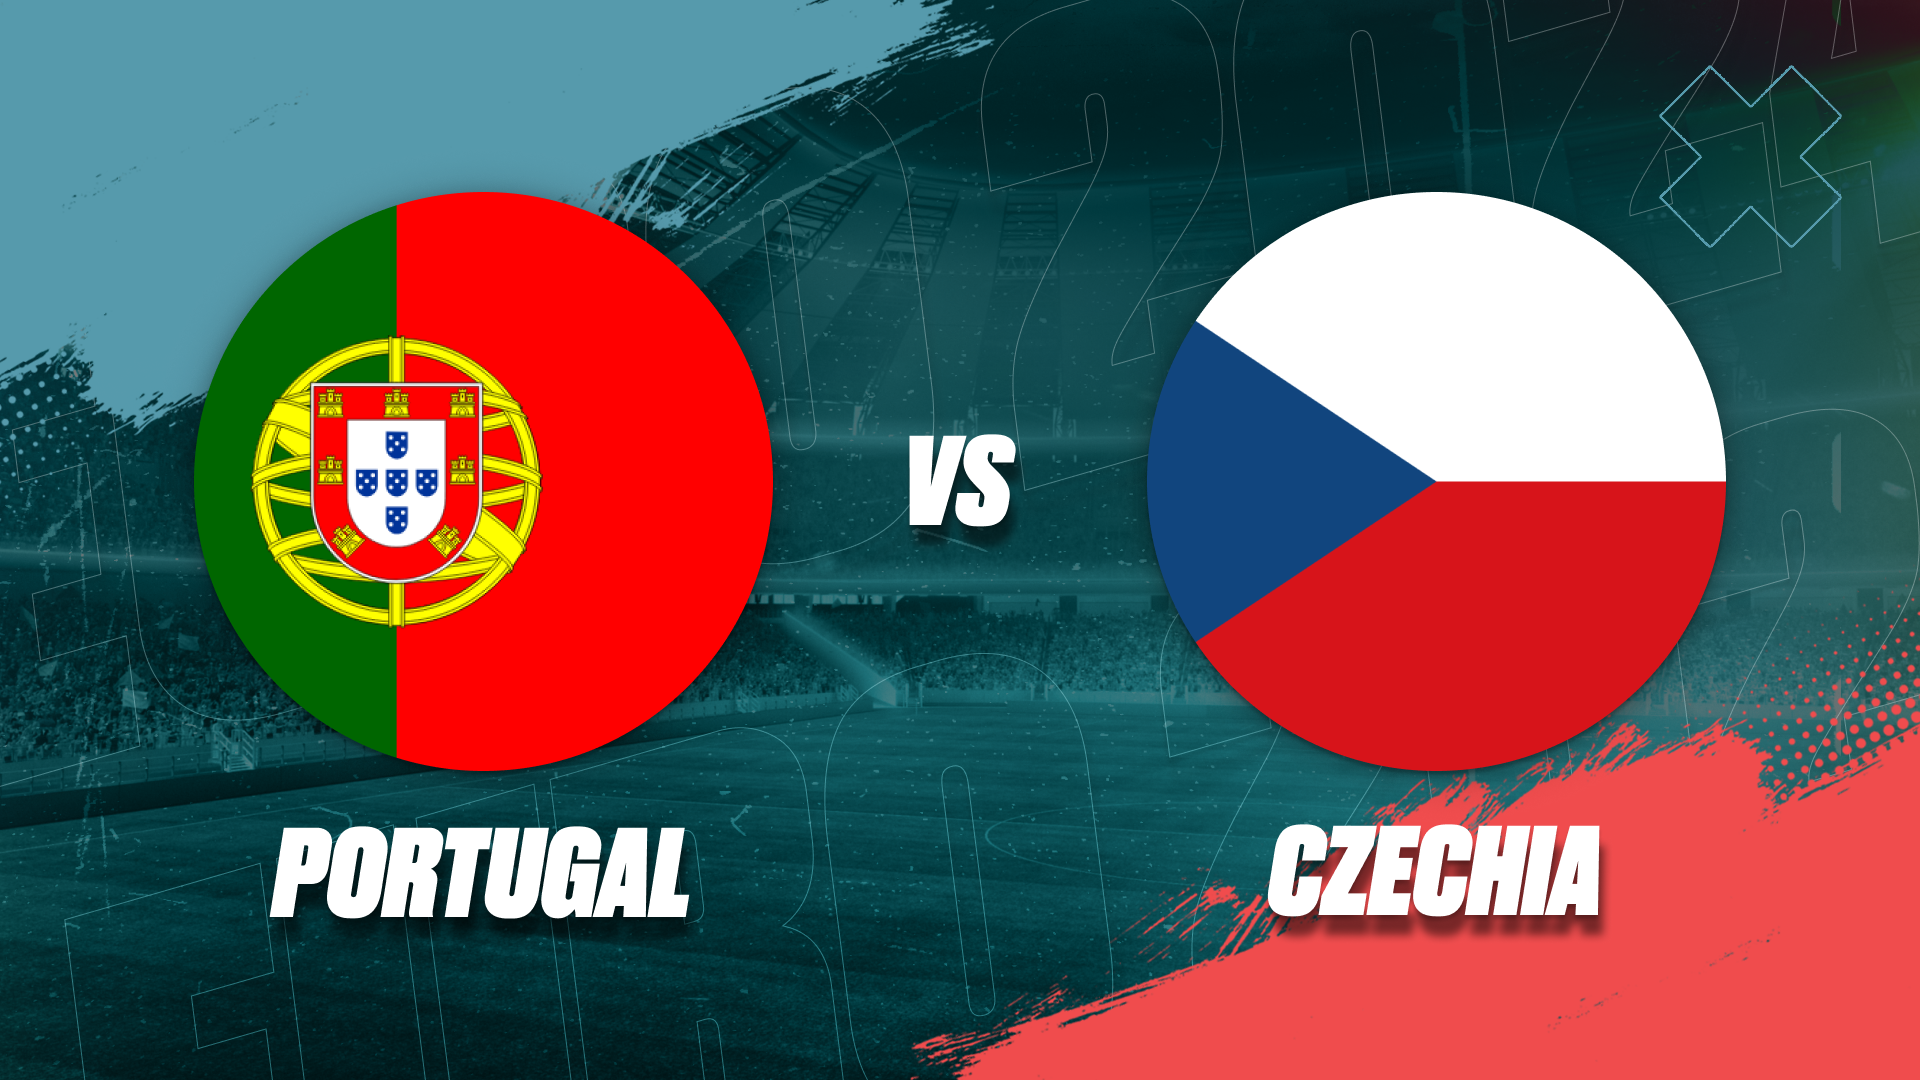 Portugal’s Win Over Czechia Raises Concerns Despite Victory